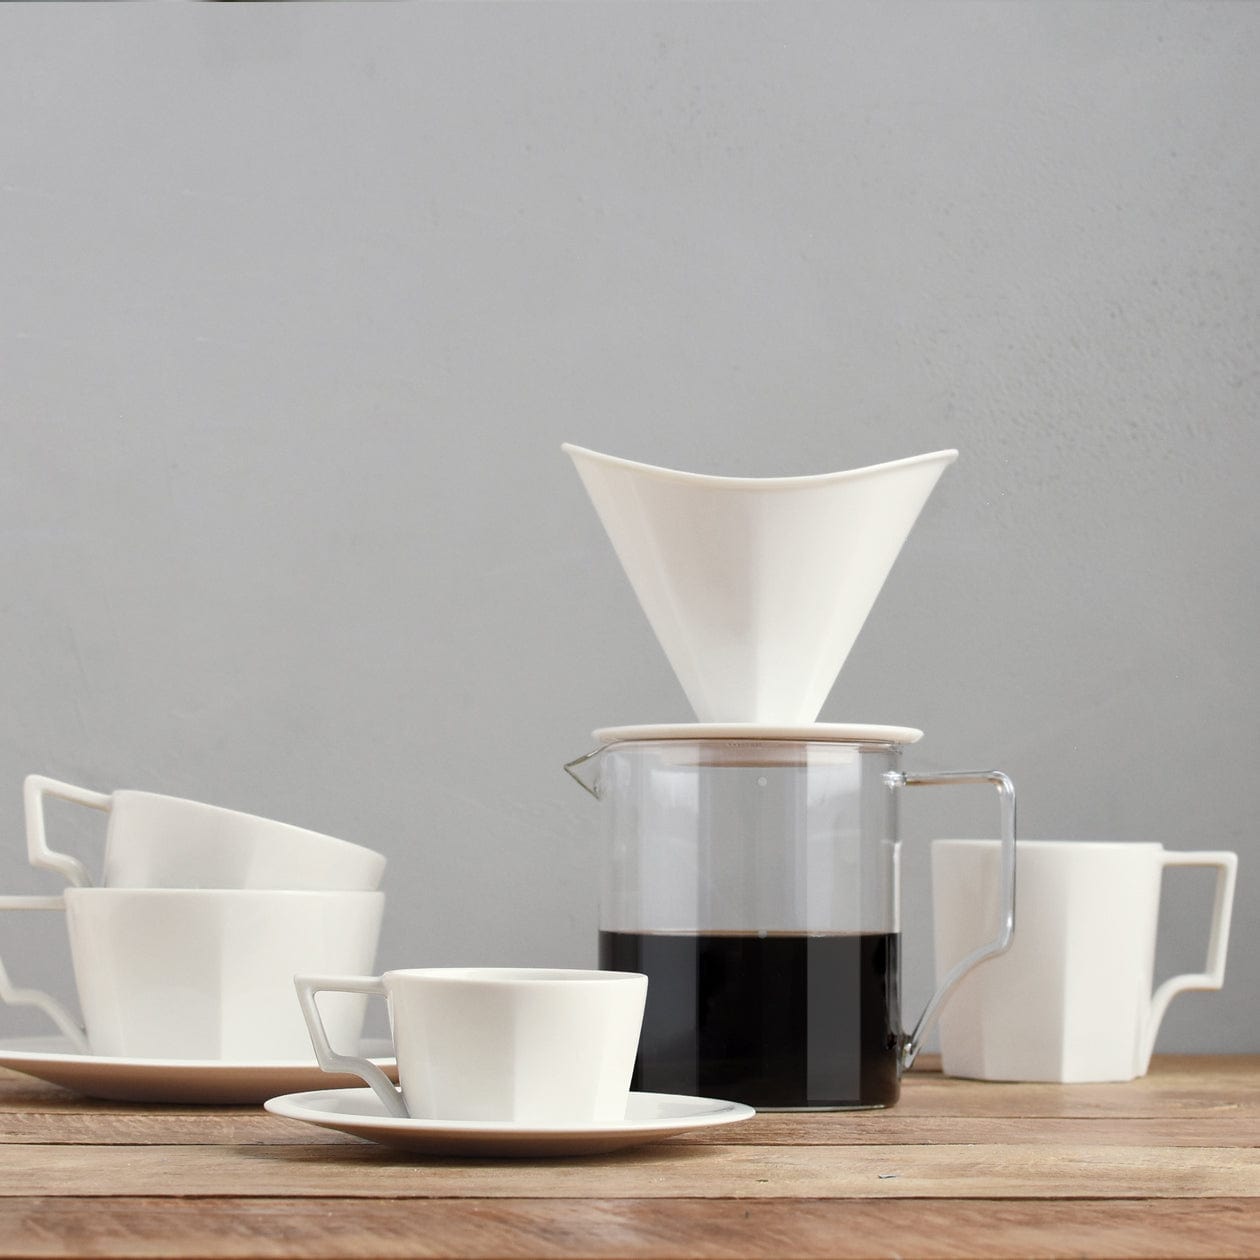 Découvrez l'élégance géométrique de la tasse à café OCT de KINTO. Confort ergonomique, texture lustrée, et une expérience de café exceptionnelle.